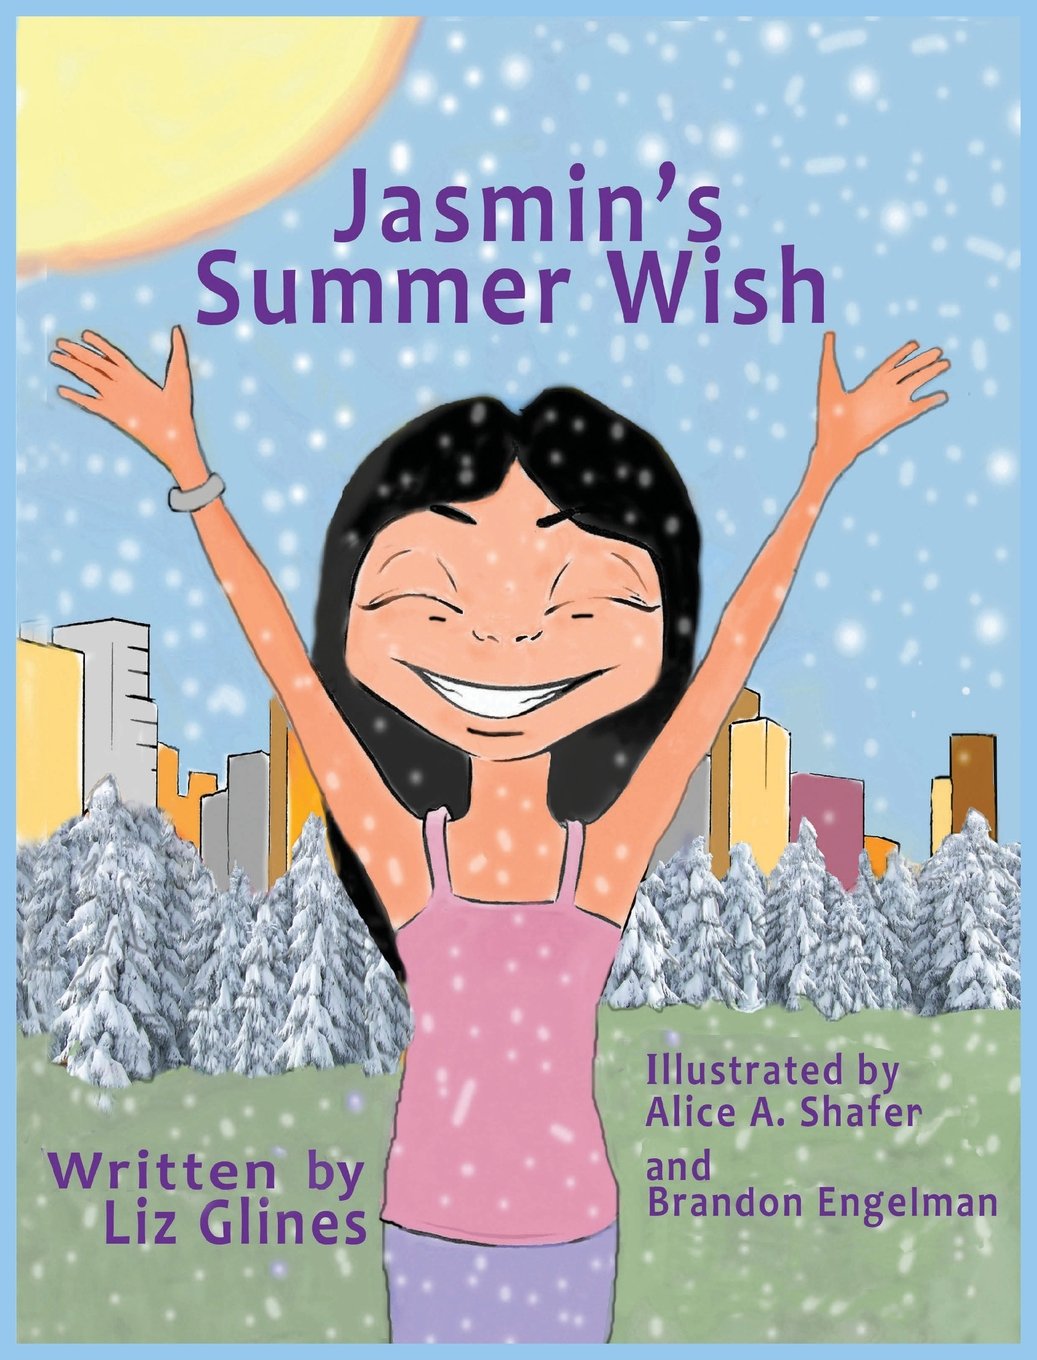 Jasmin’s Summer Wish